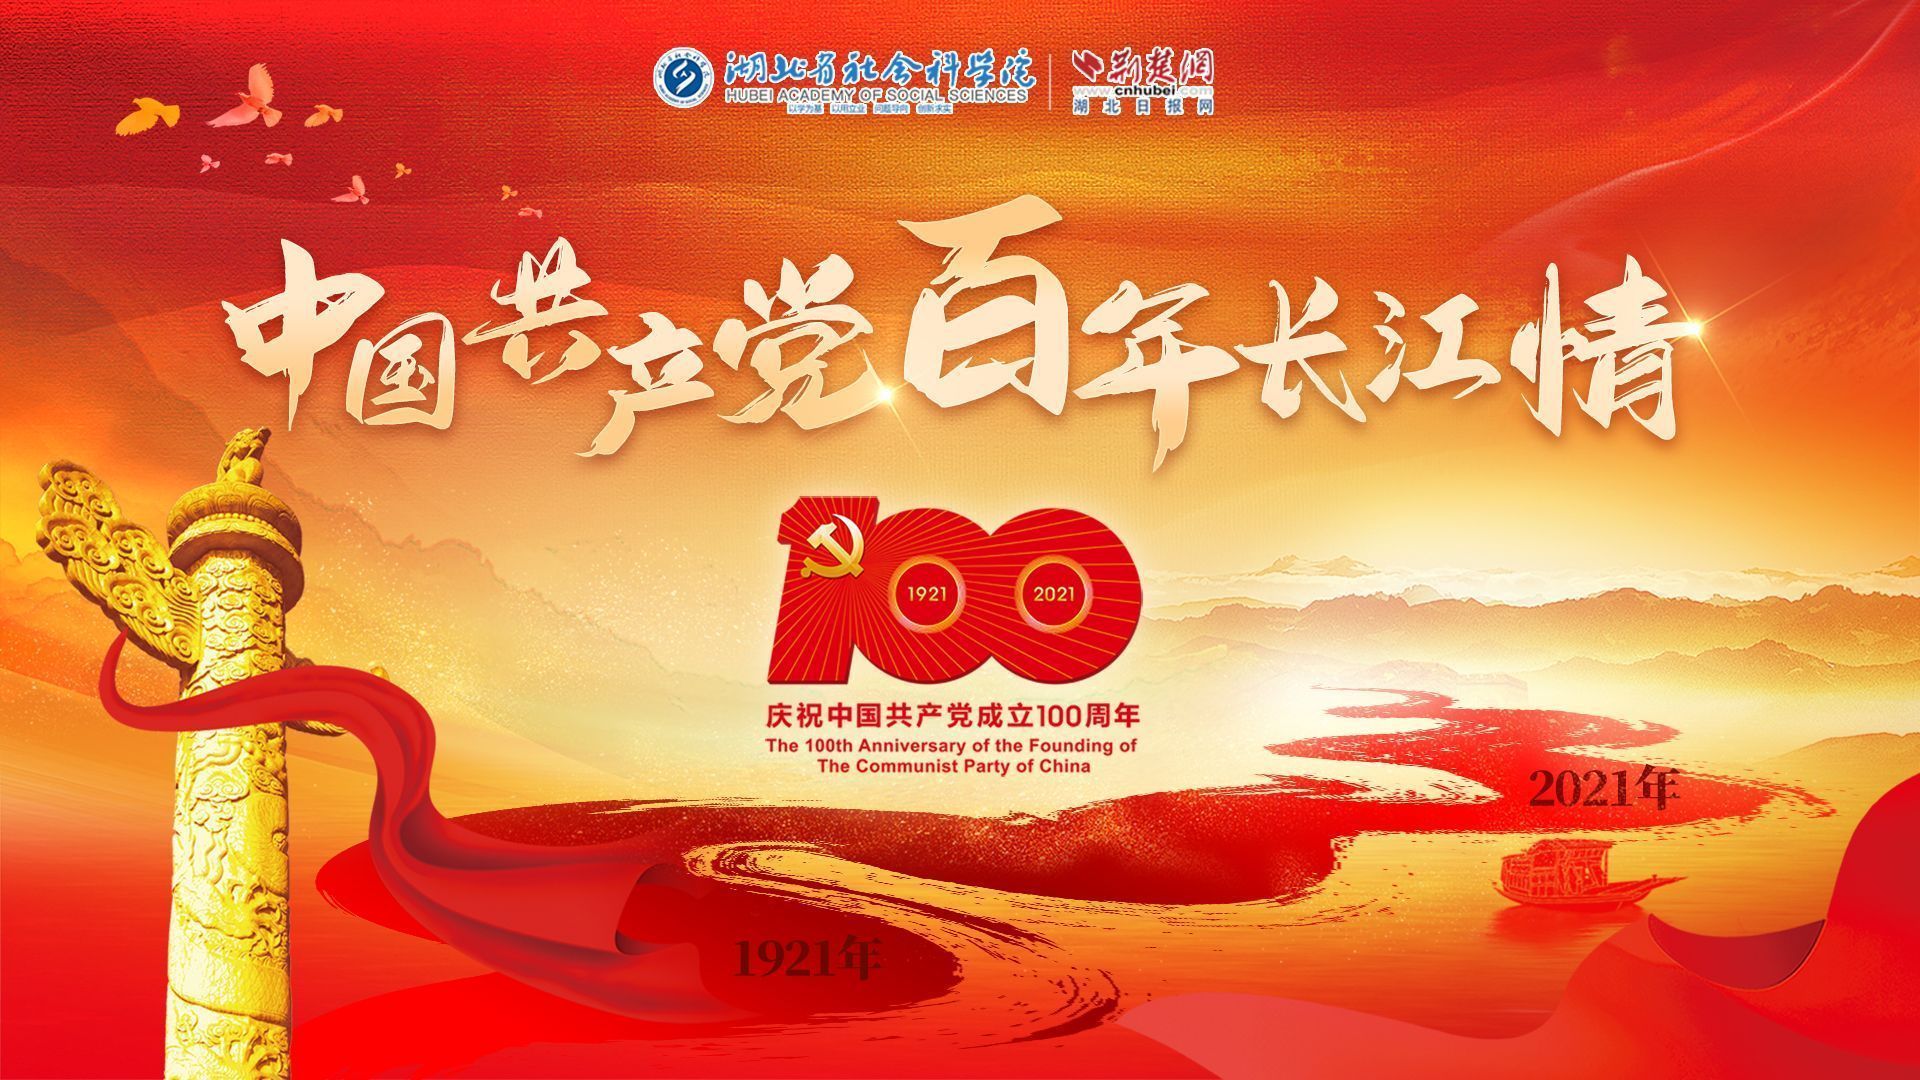 【中国共产党百年长江情·红色篇】点燃革命火种 坚定理想信念